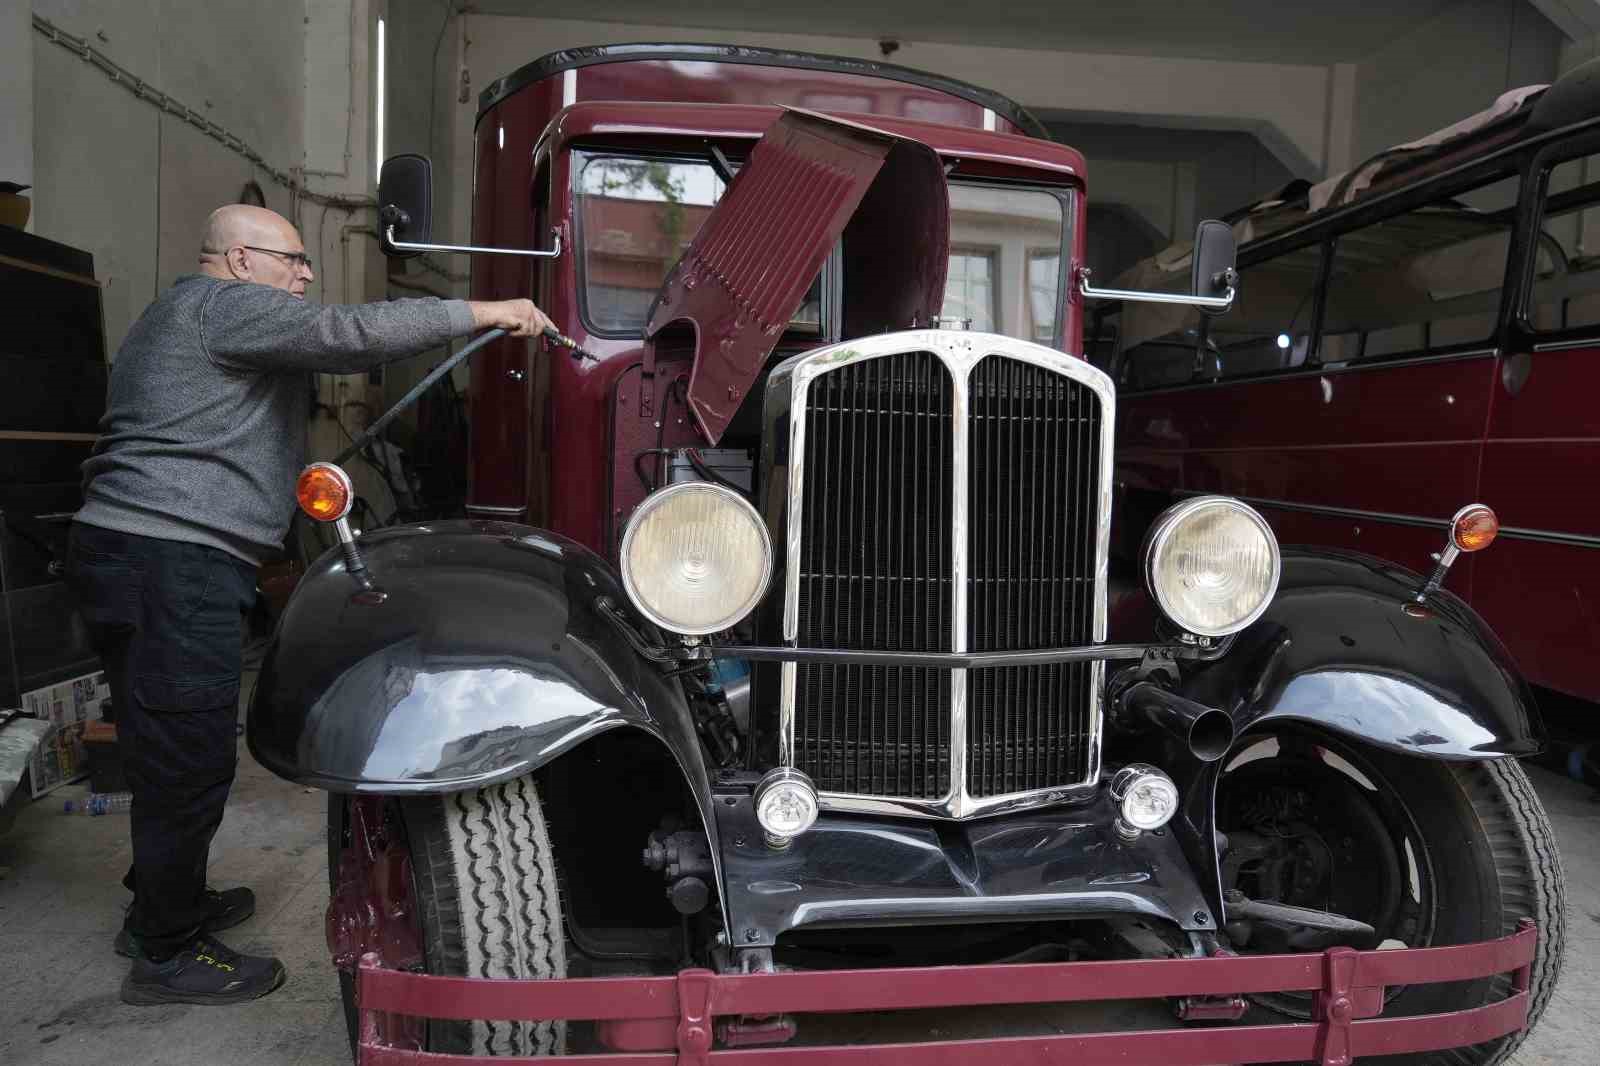 ozel yillardir hurdadaydi 1938 model otobusun son hali goz kamastirdi 7 GIHQMefV